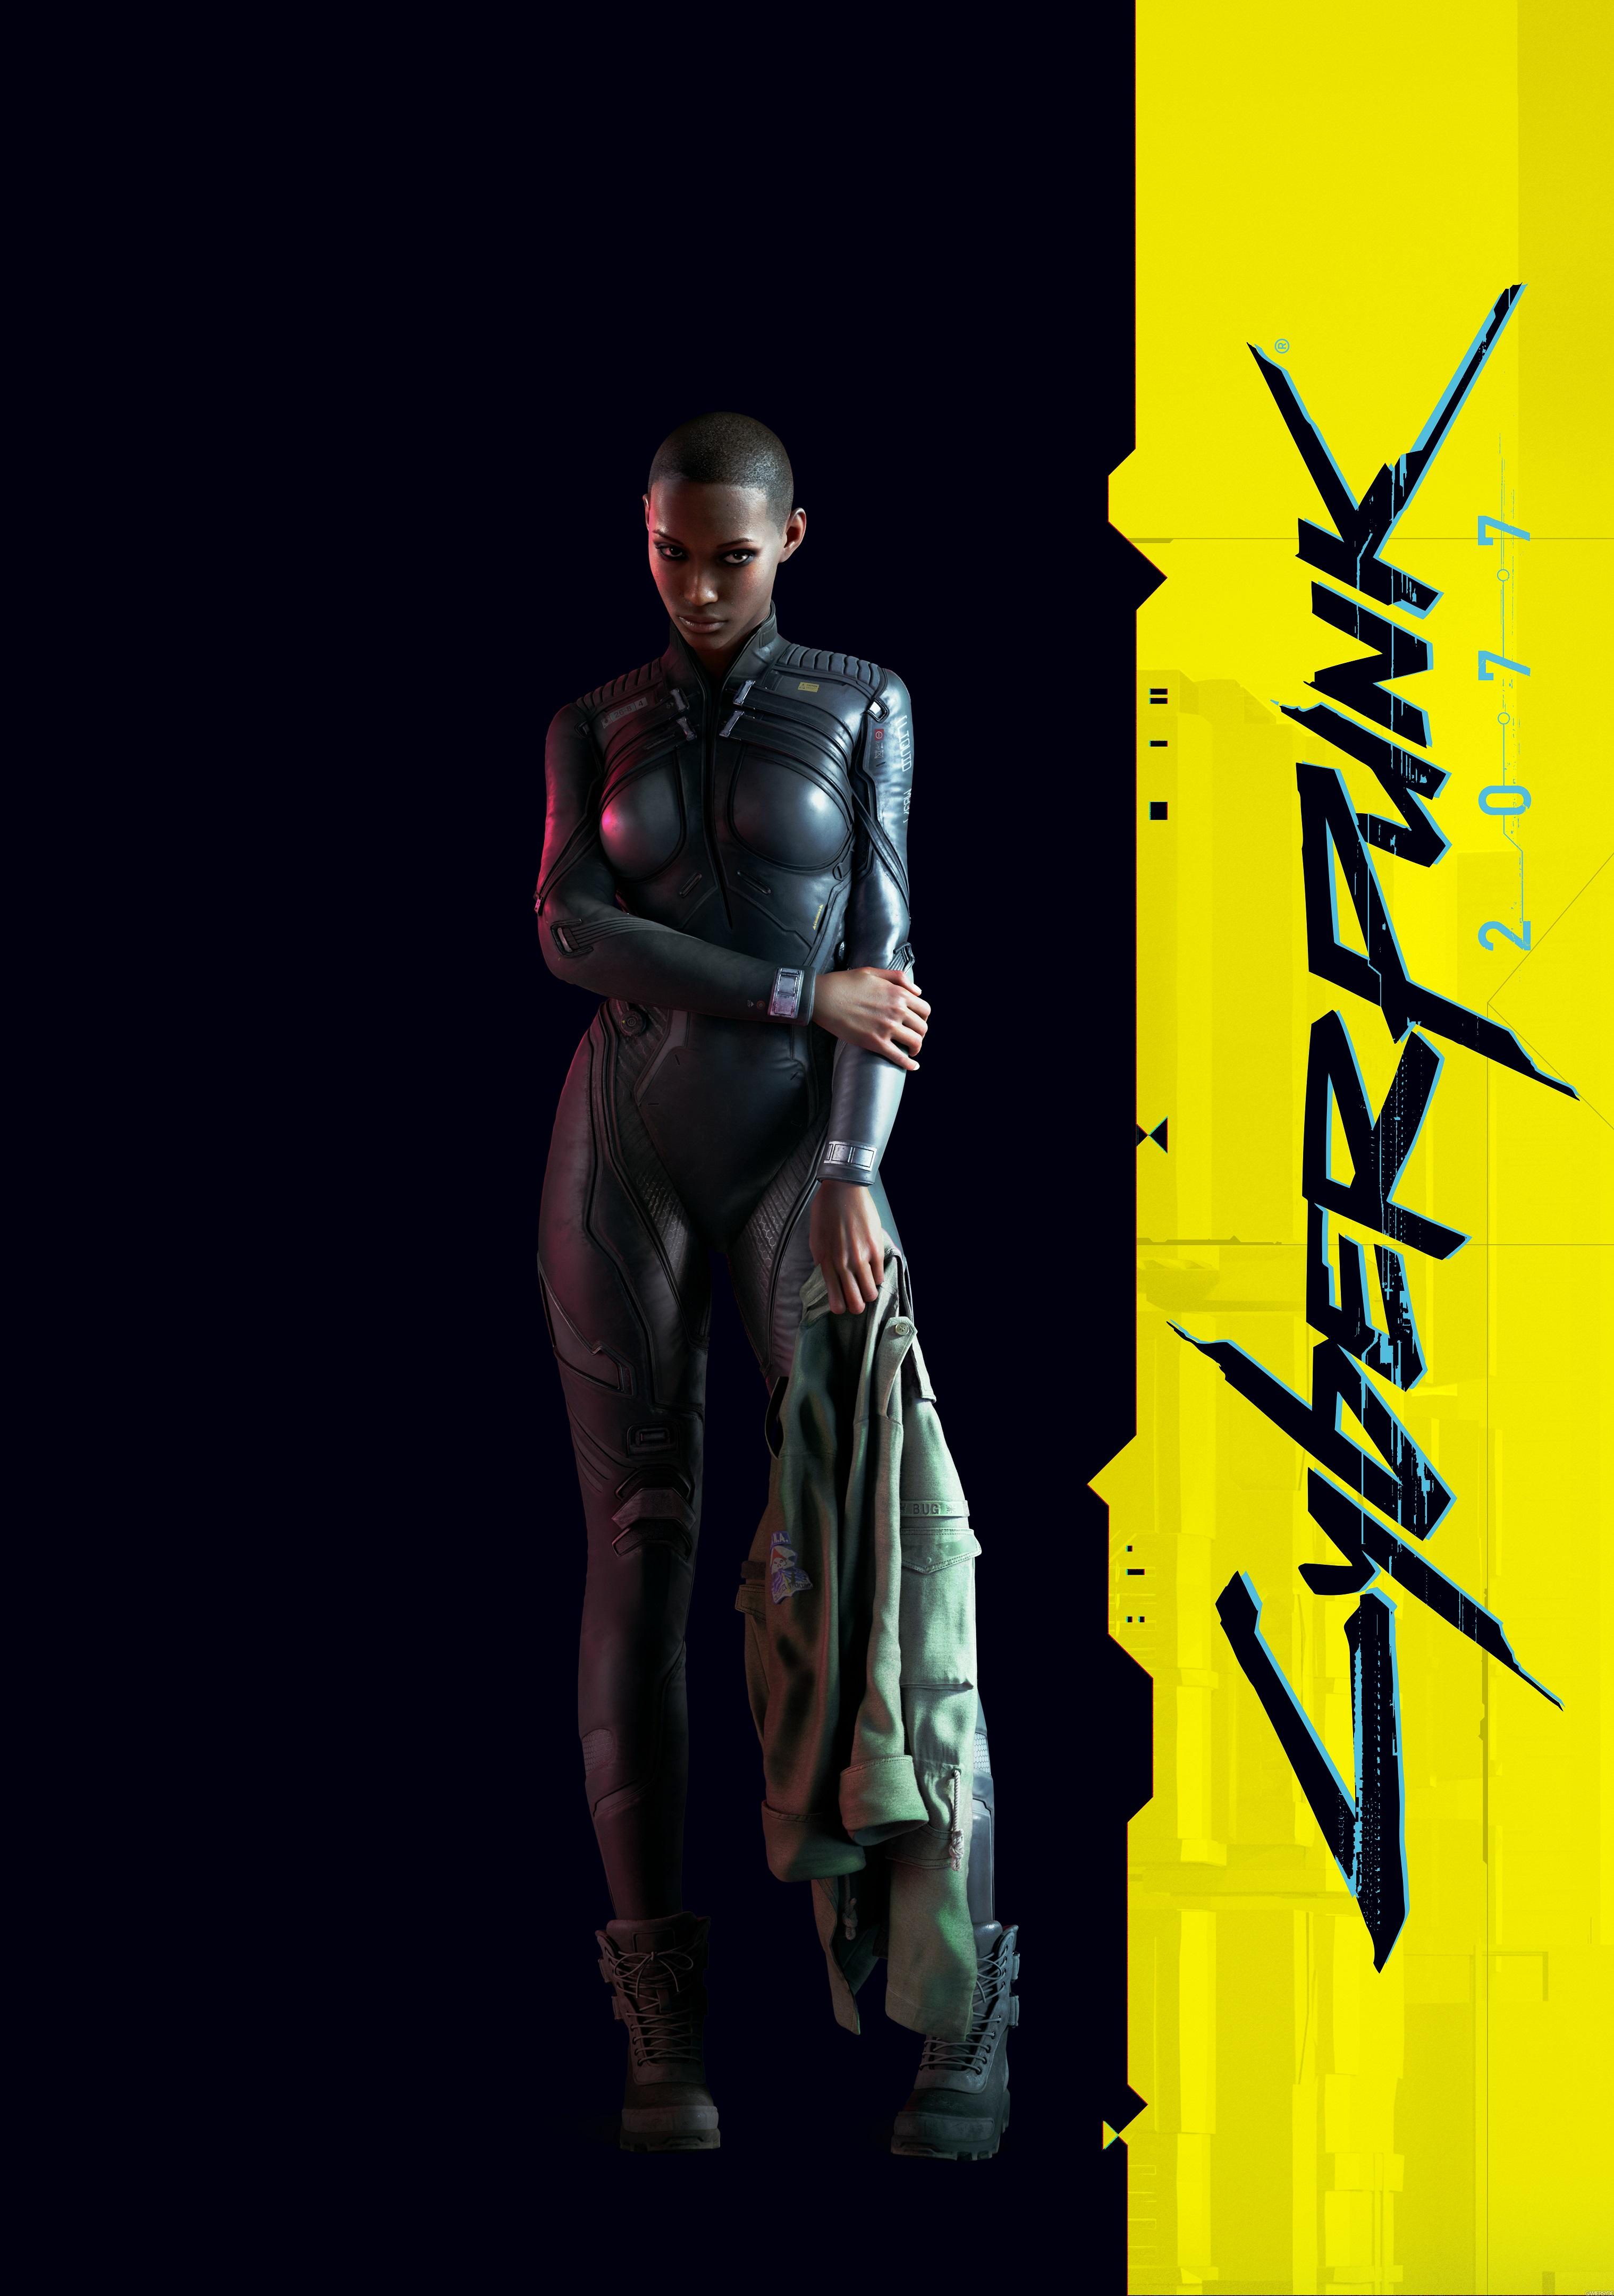 Cyberpunk 2077 ganha várias lindas artworks e quadros retratando as camadas sociais do jogo